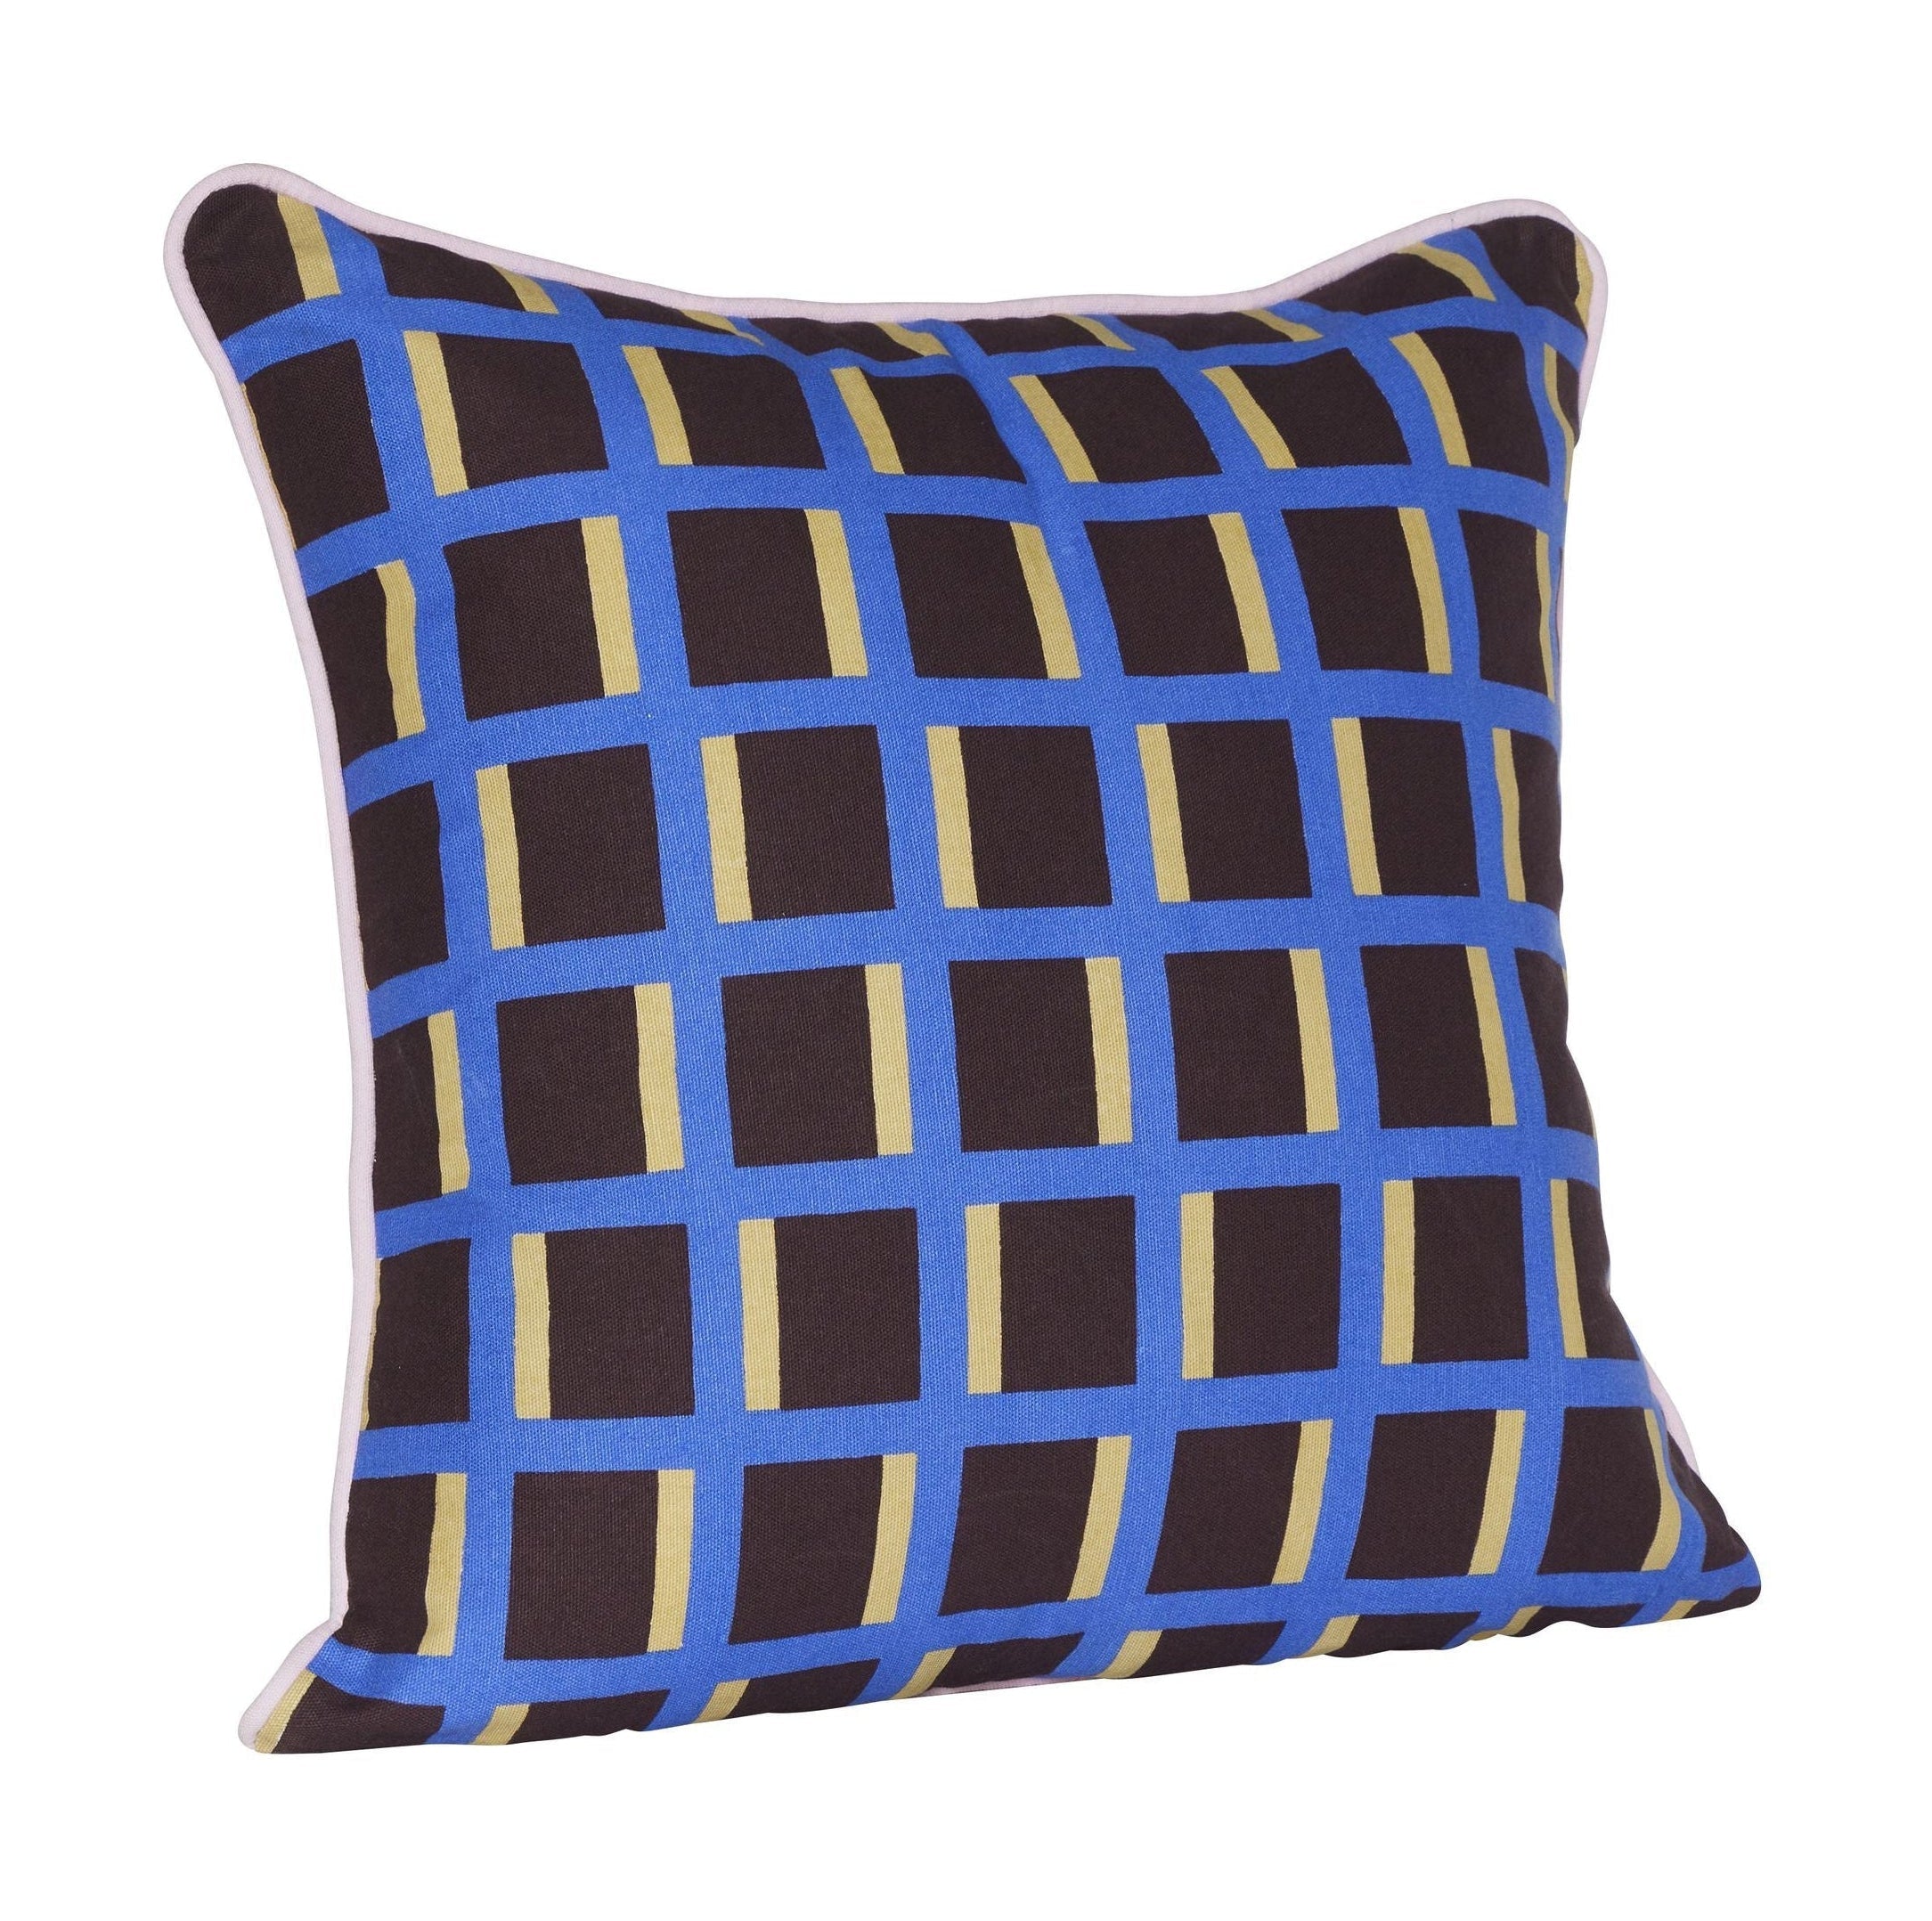 Hübsch Agenda Cushion, multicolore / marron / bleu